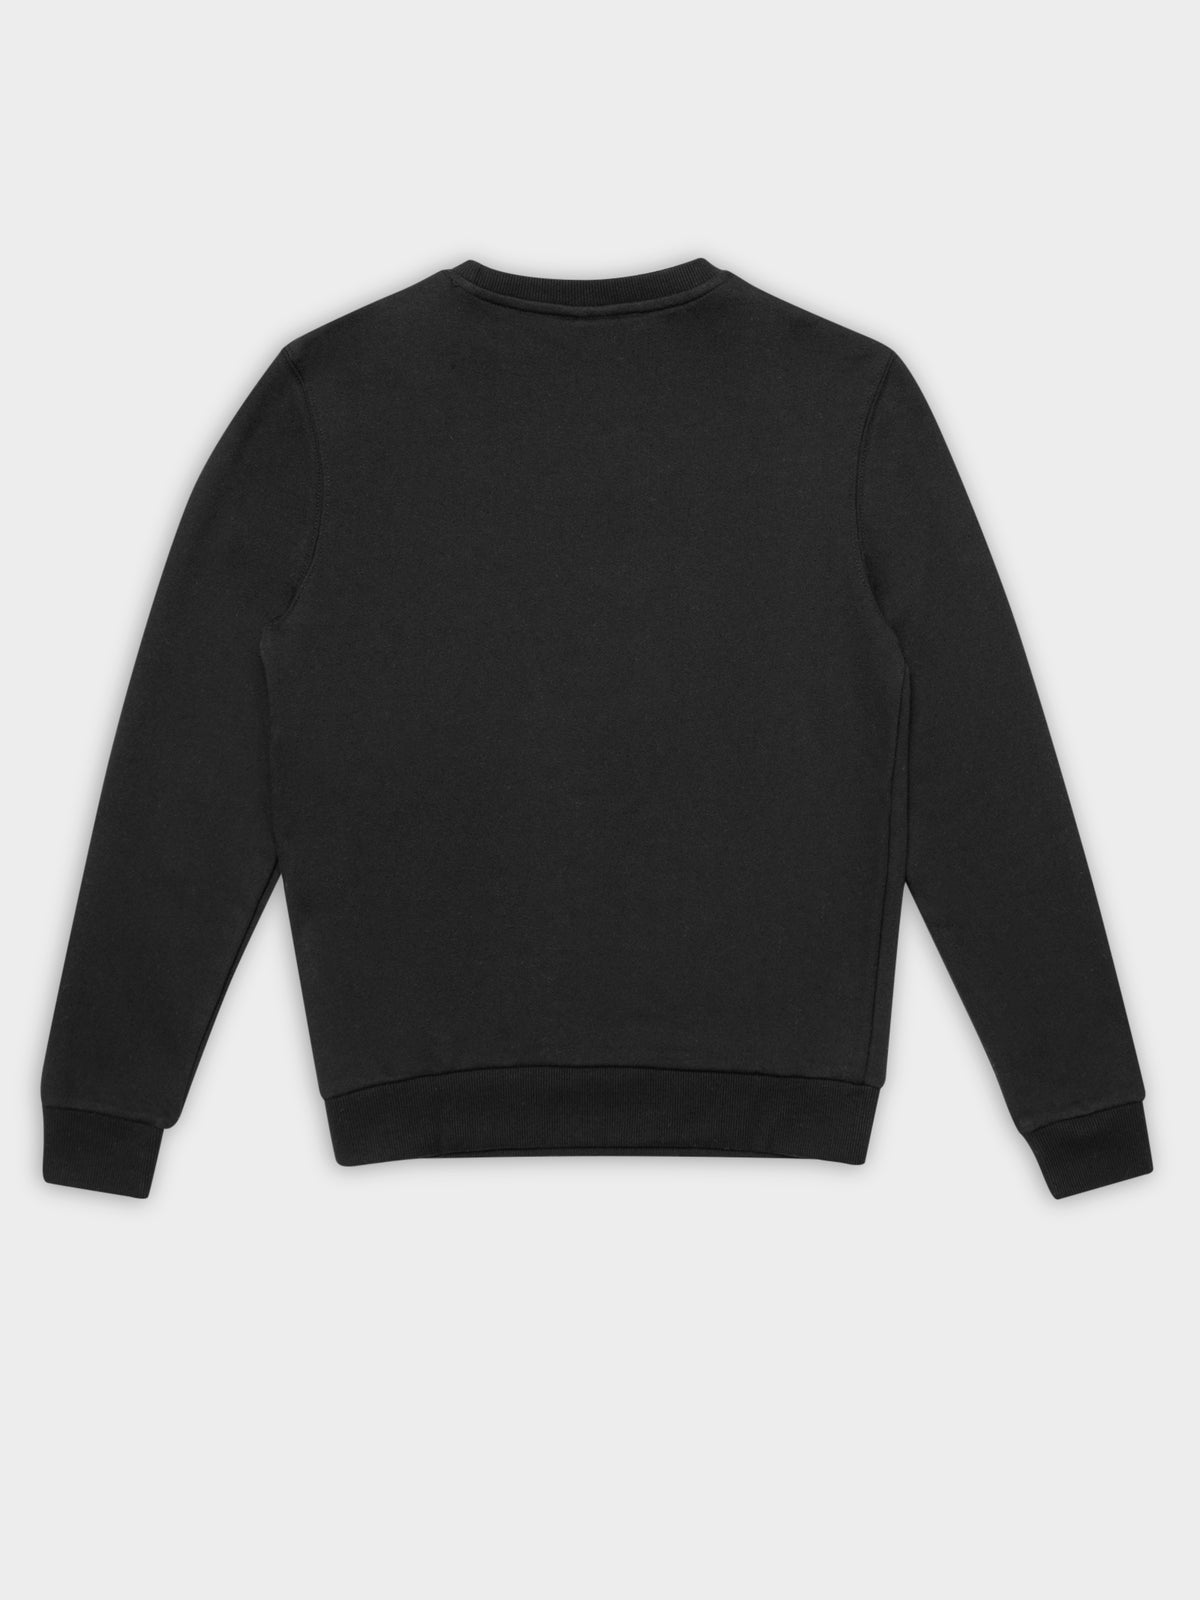 Triome Sweater in Black